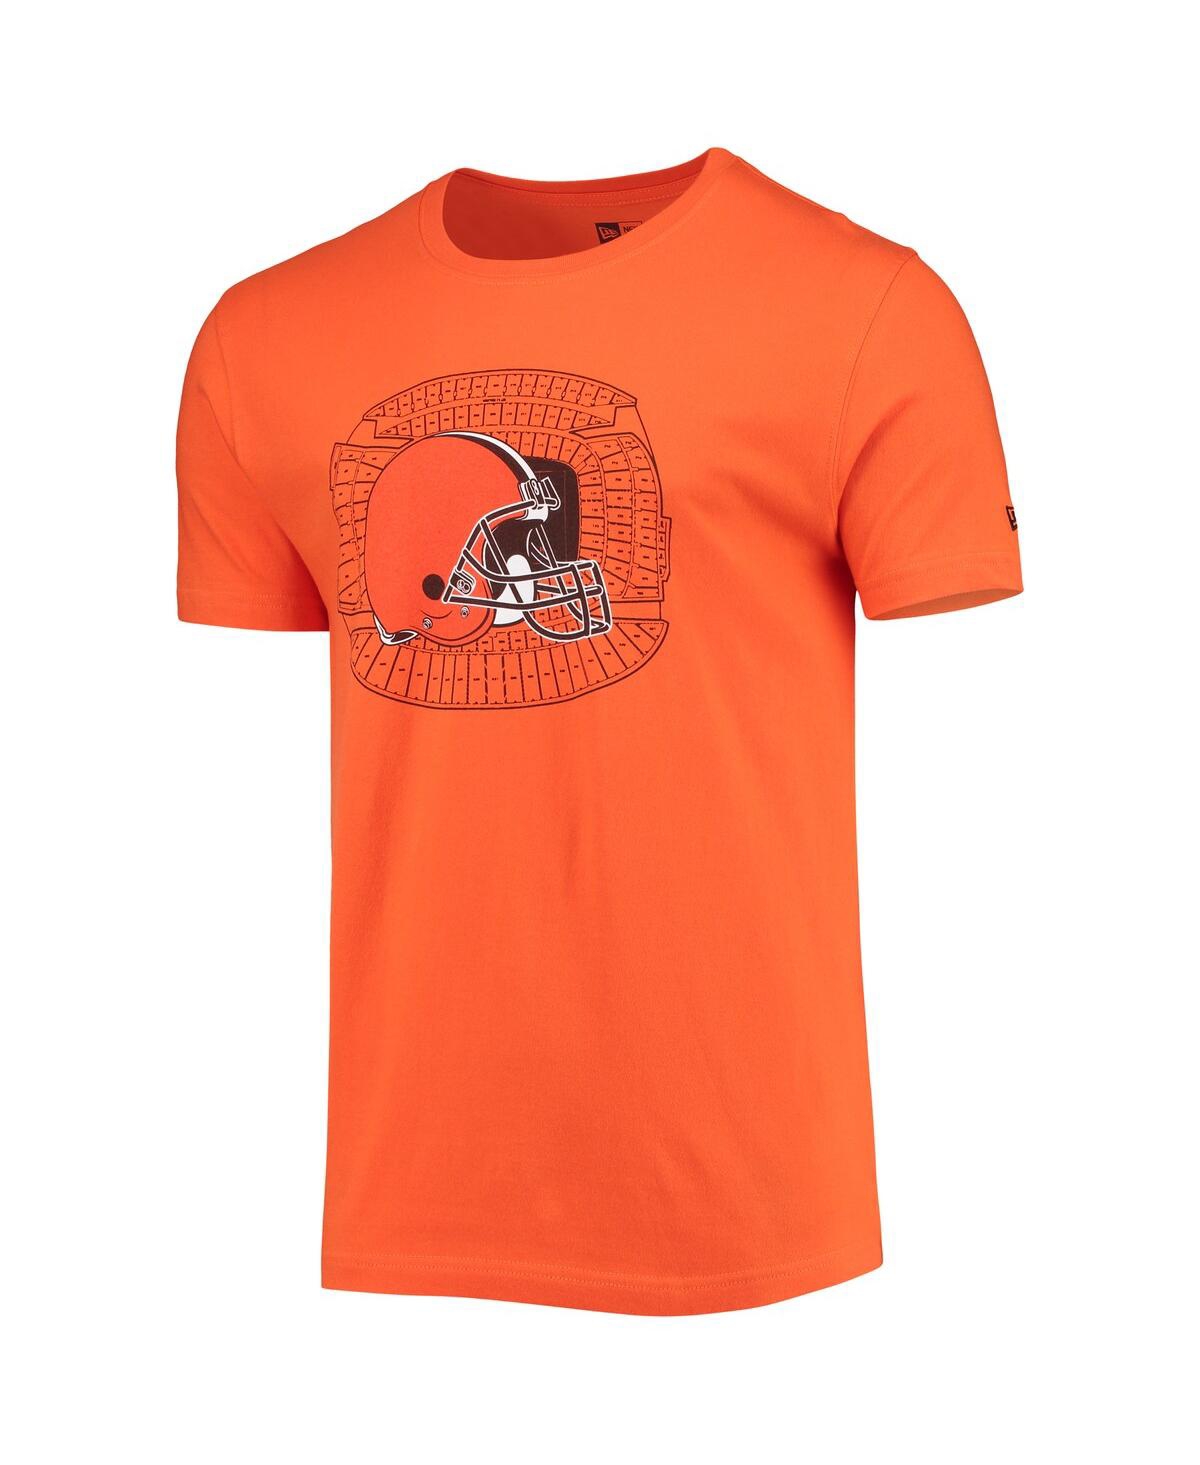 Shop New Era Men's  Orange Cleveland Browns Stadium T-shirt